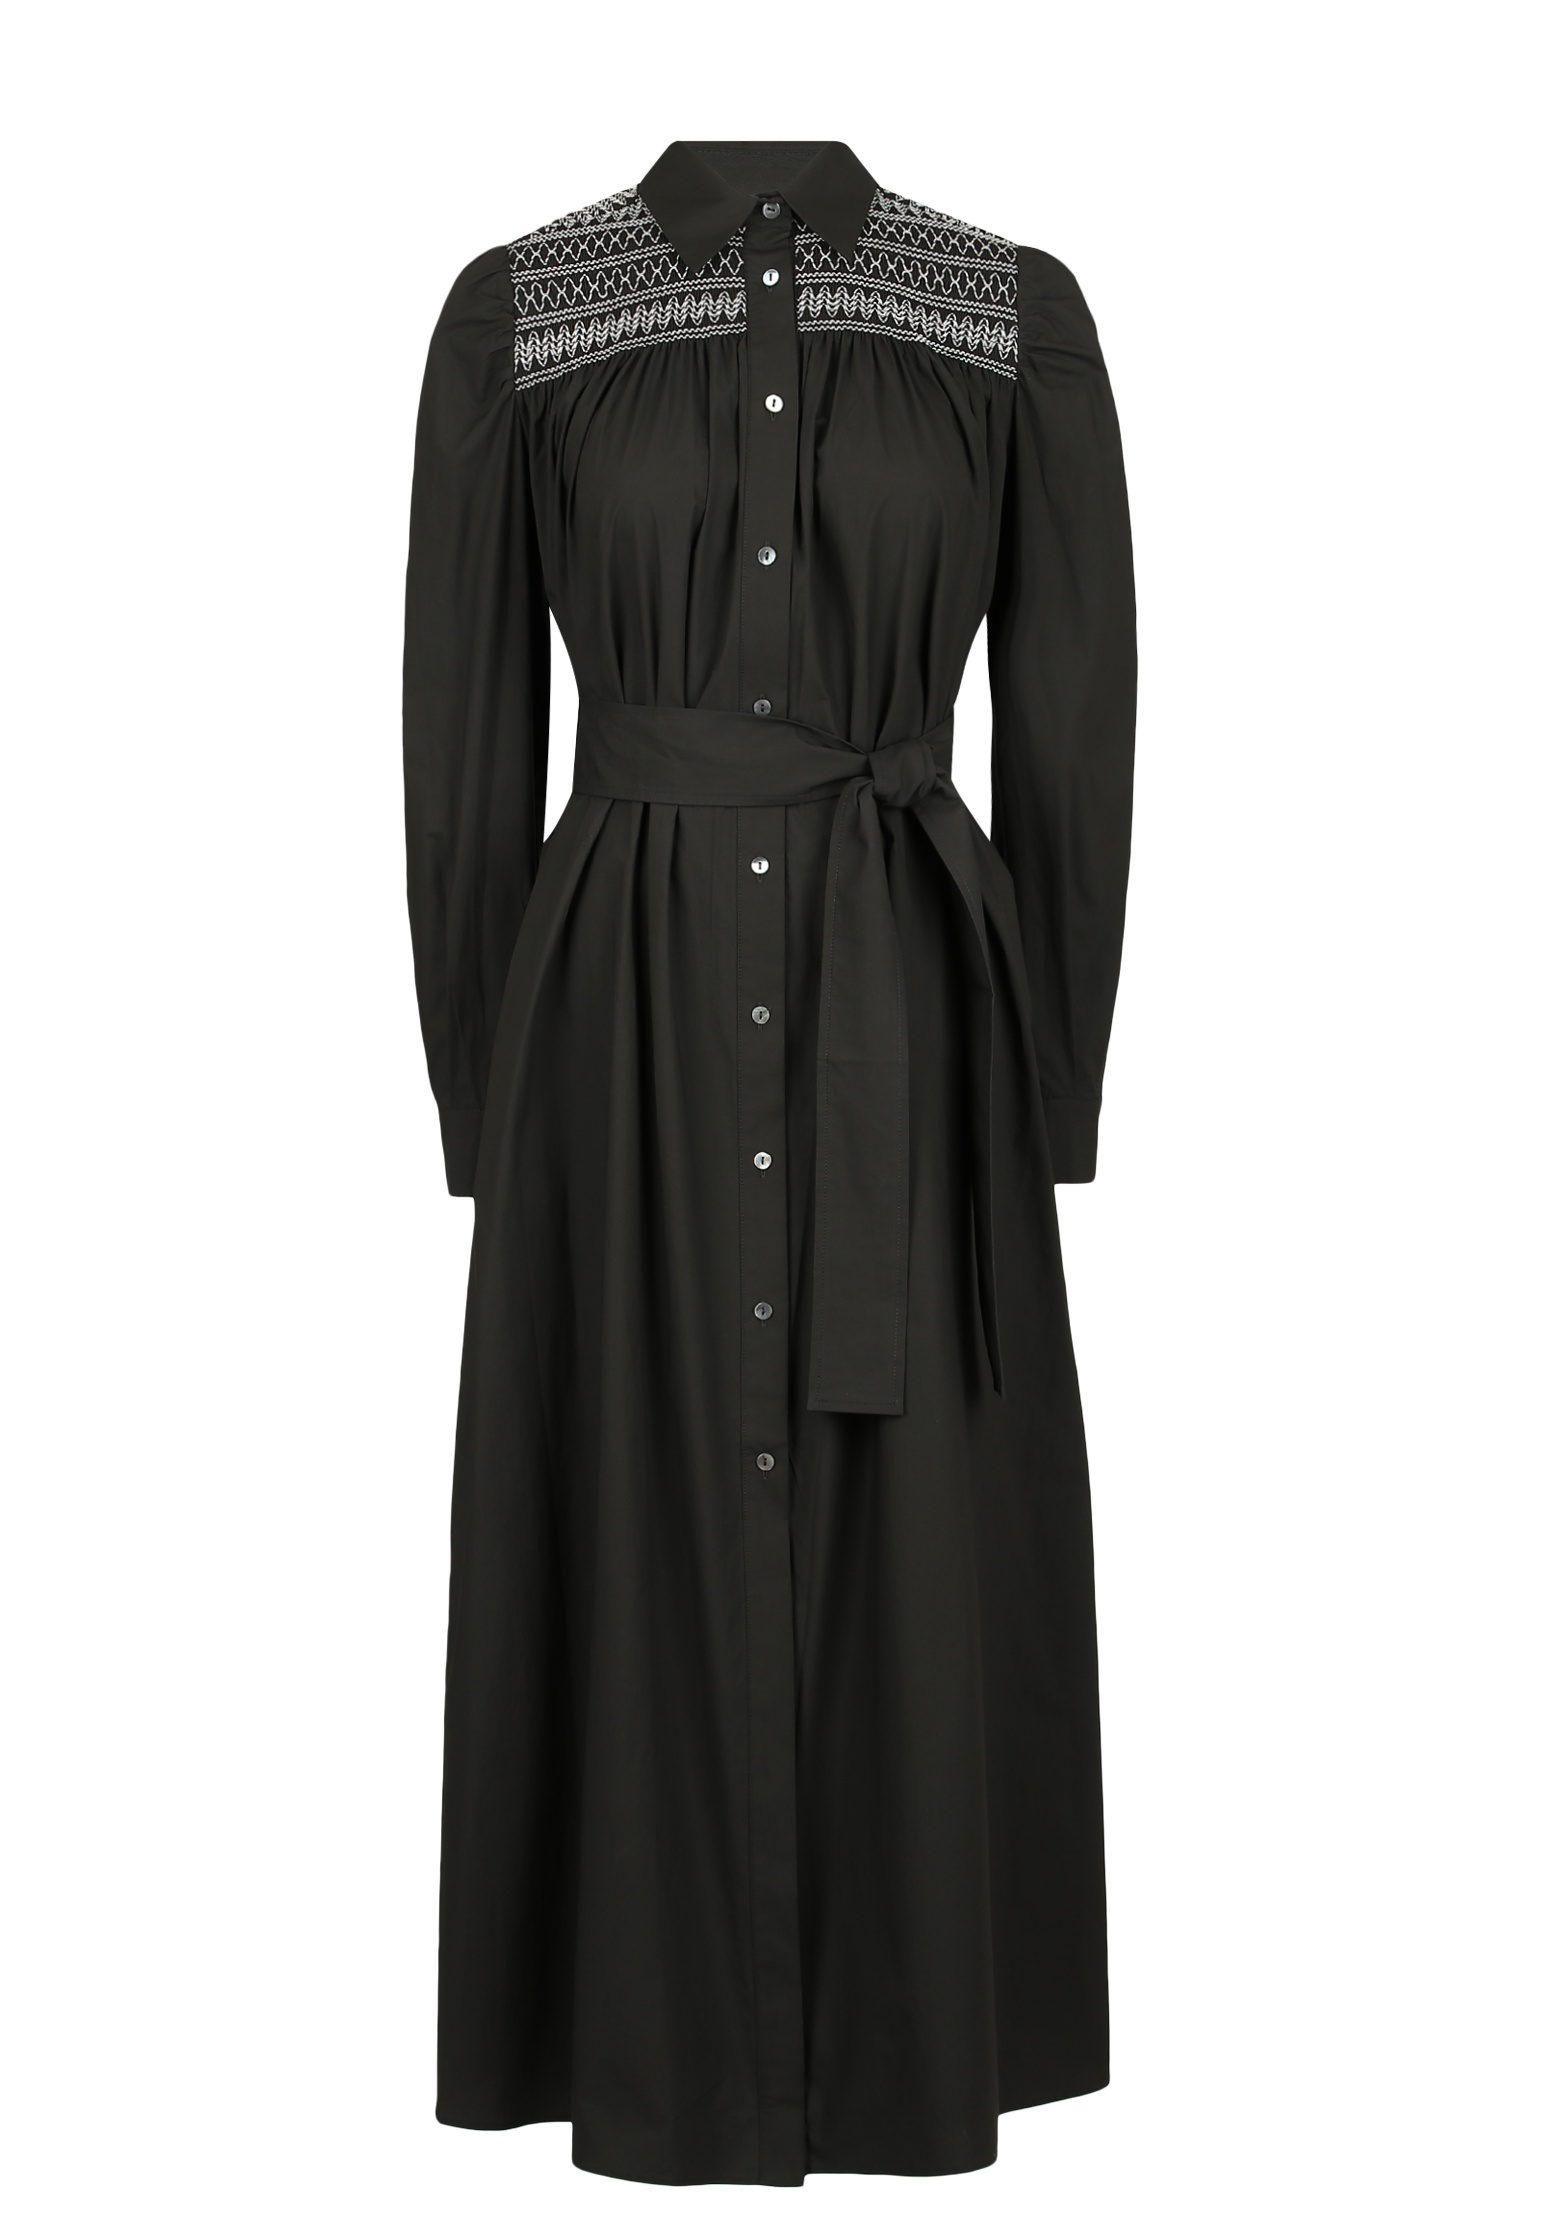 Платье женское P.A.R.O.S.H. 143590 черное L